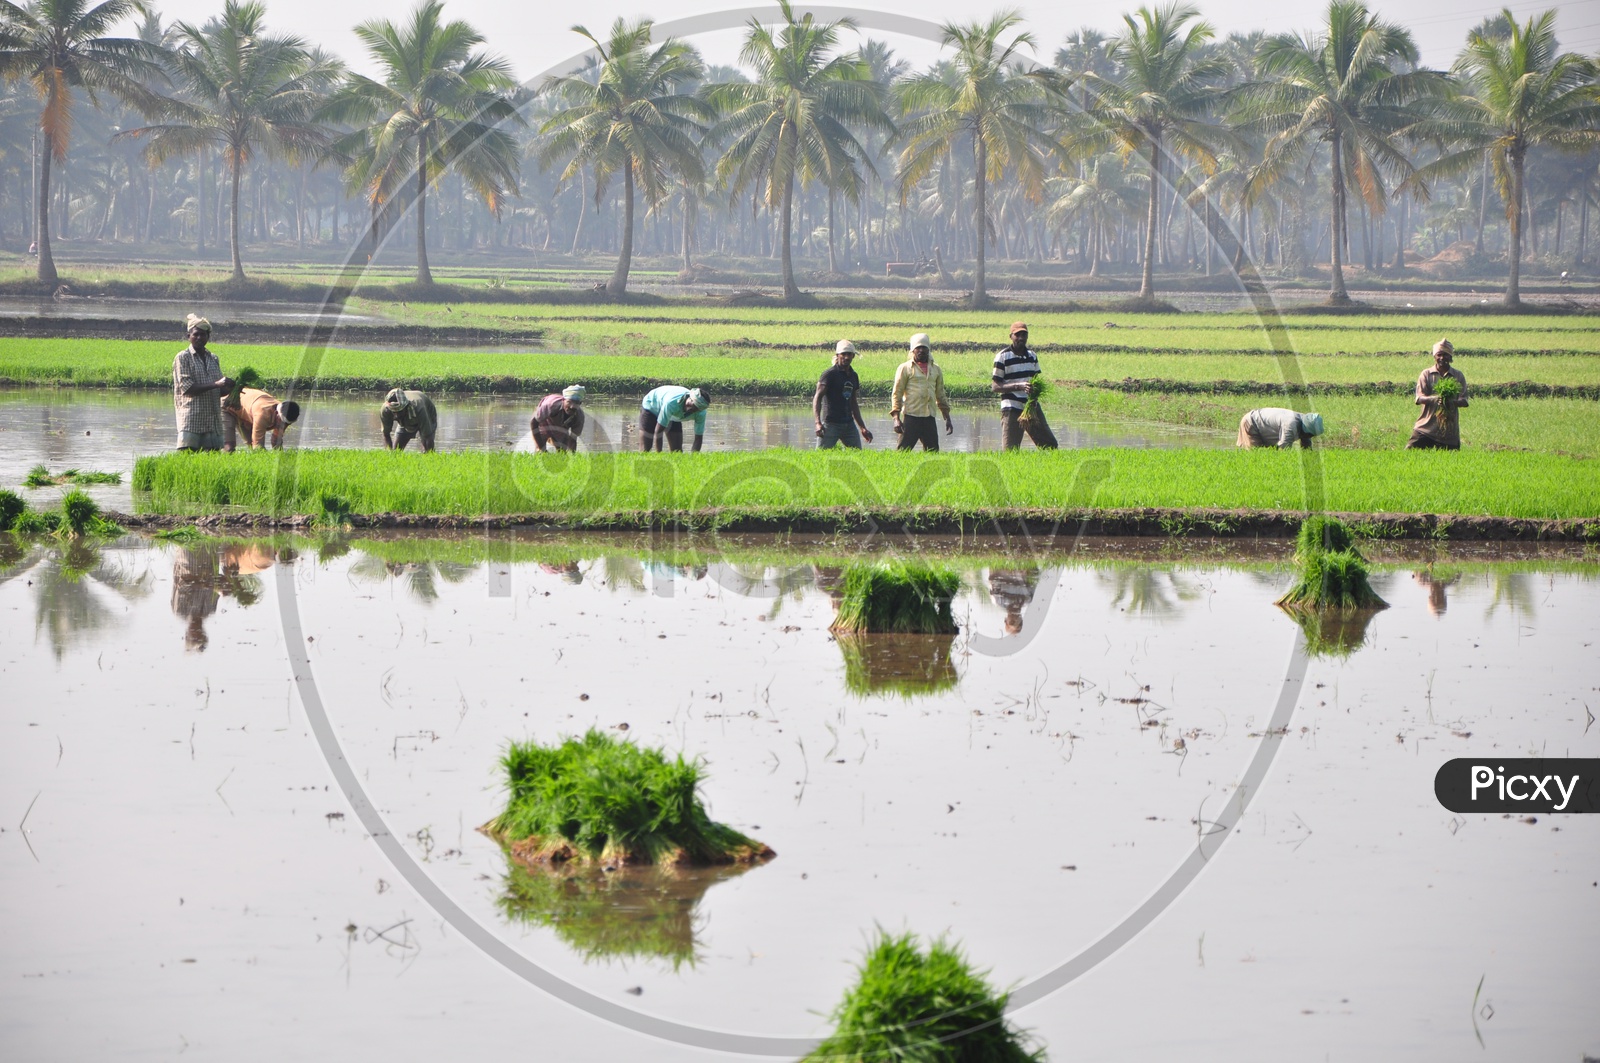 Farmers in Paddy field